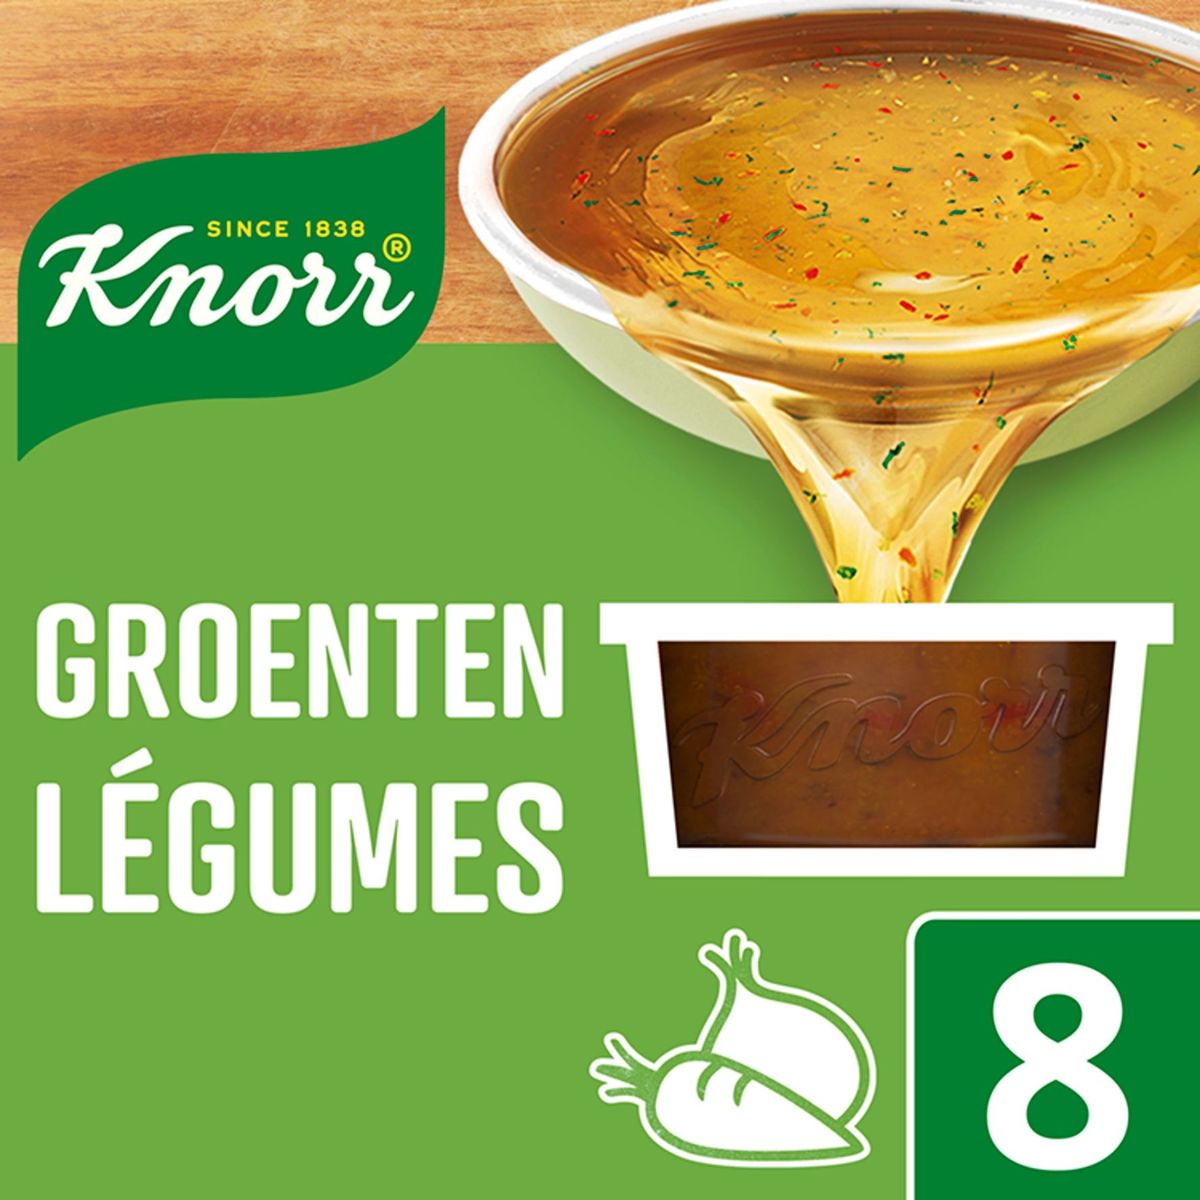 Knorr Marmite Bouillon Légumes 8 x 28 g